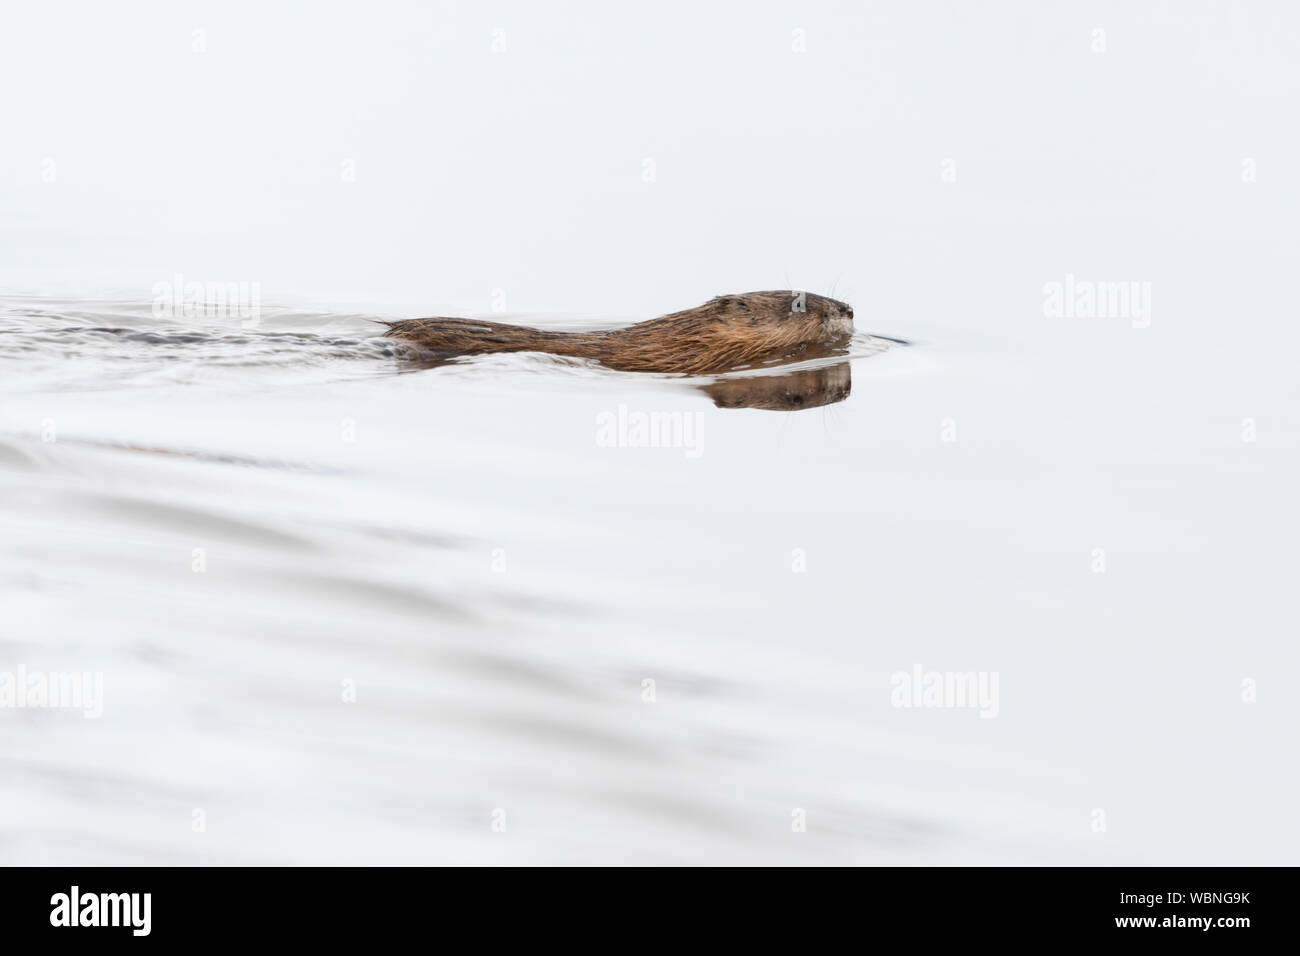 Topo muschiato ( Ondatra zibethicus ) in inverno, nuoto attraverso un corpo di acqua, della fauna selvatica, del Grand Teton National Park, Wyoming negli Stati Uniti. Foto Stock